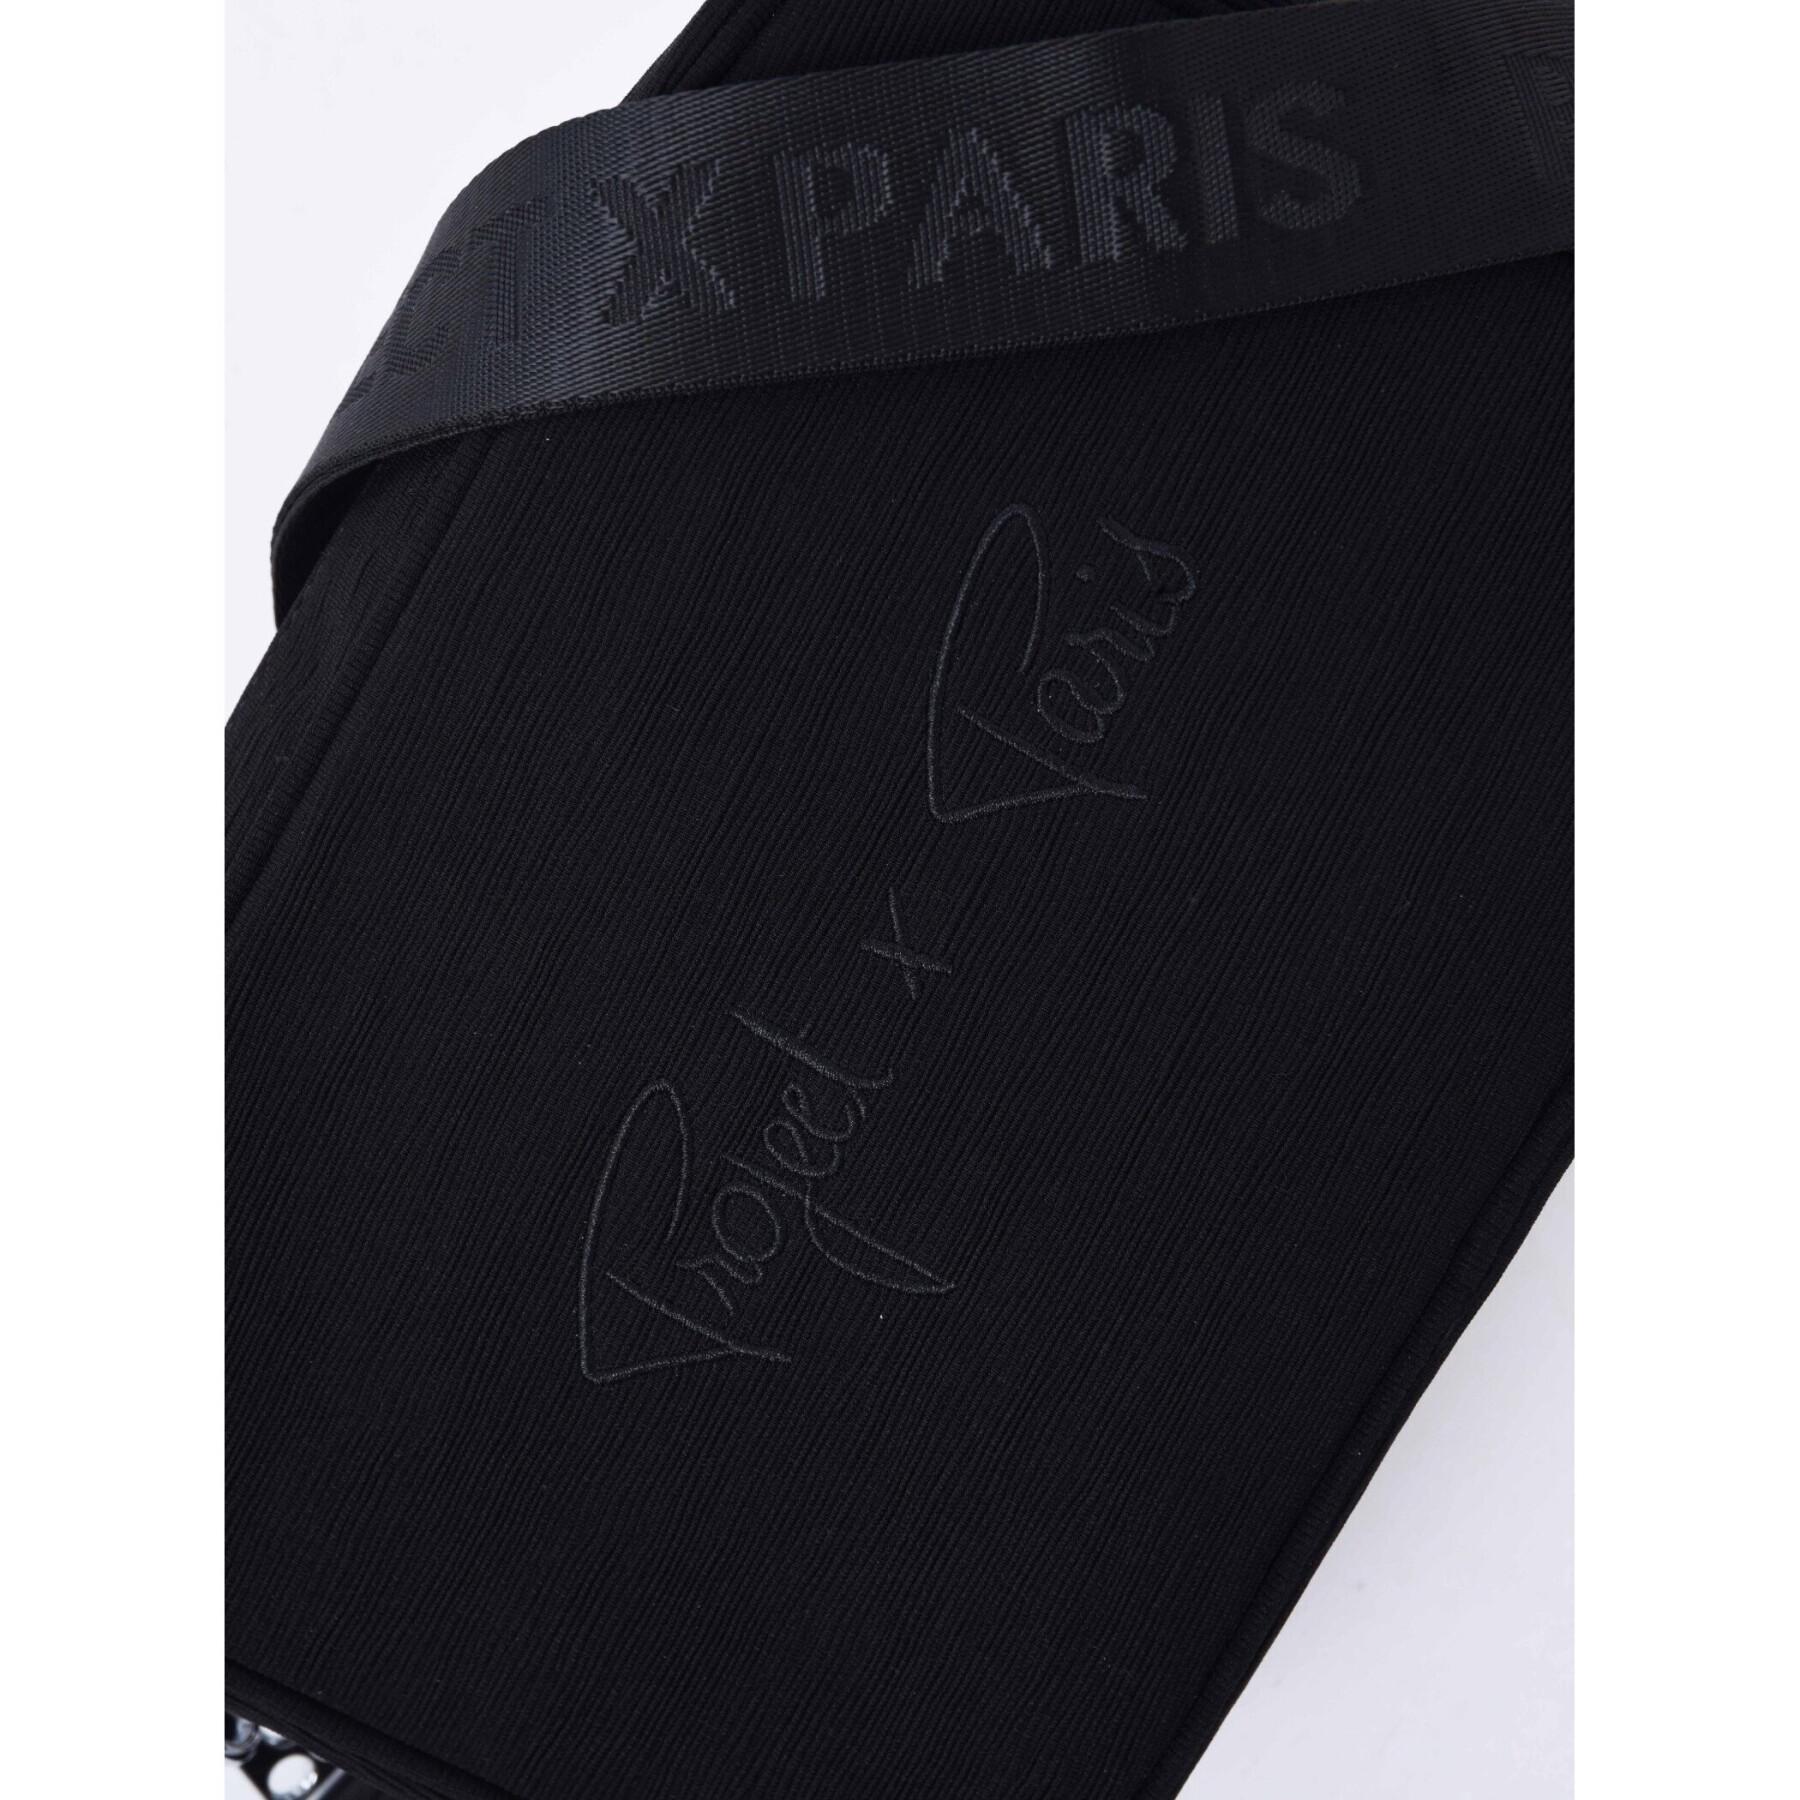 Saco de ombro Project X Paris